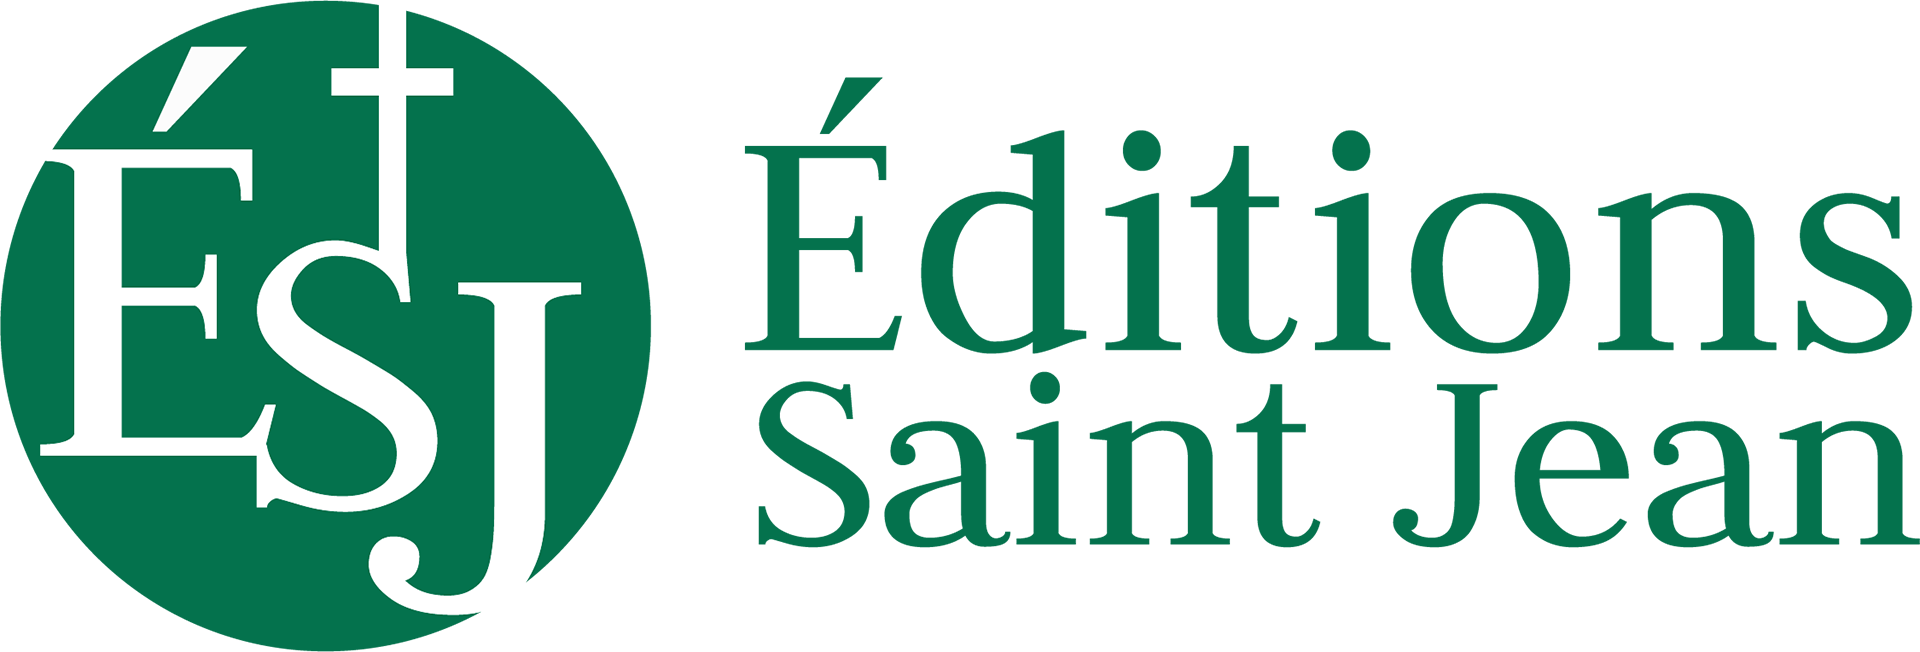 Éditions Saint Jean-Librairie Chrétienne depuis 1996